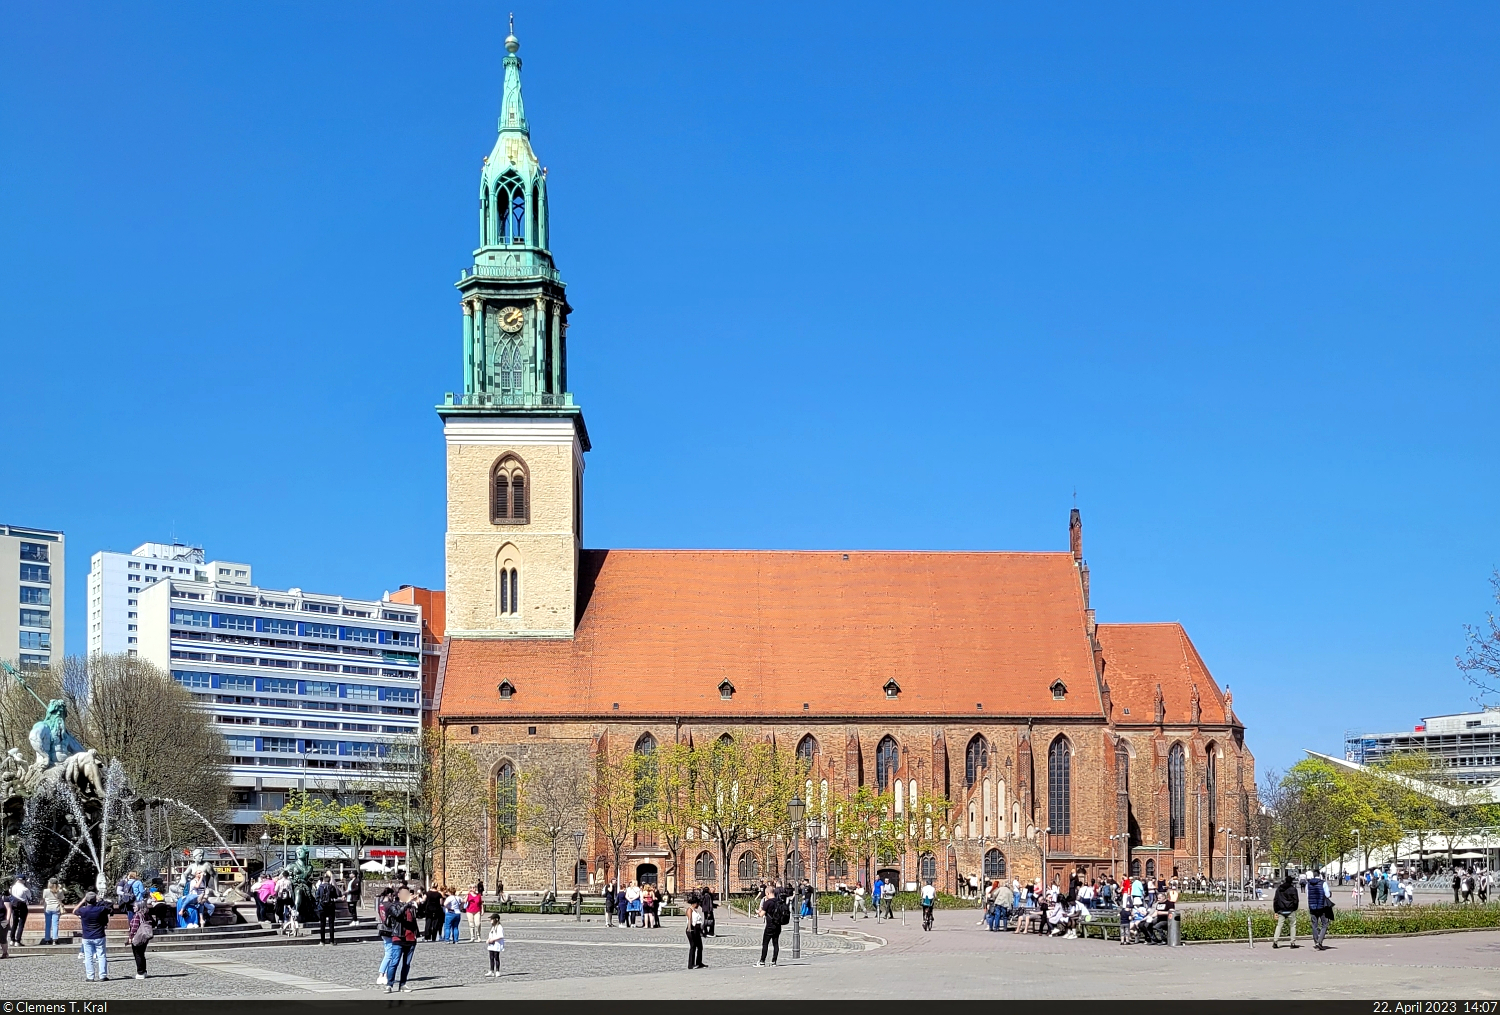 Vom historischen Stadtzentrum Berlins zeugt nur noch die St. Marienkirche. Einst dicht von Altbauten umgeben, findet sie sich heute im grozgig angelegten Park am Fernsehturm wieder.

🕓 22.4.2023 | 14:07 Uhr